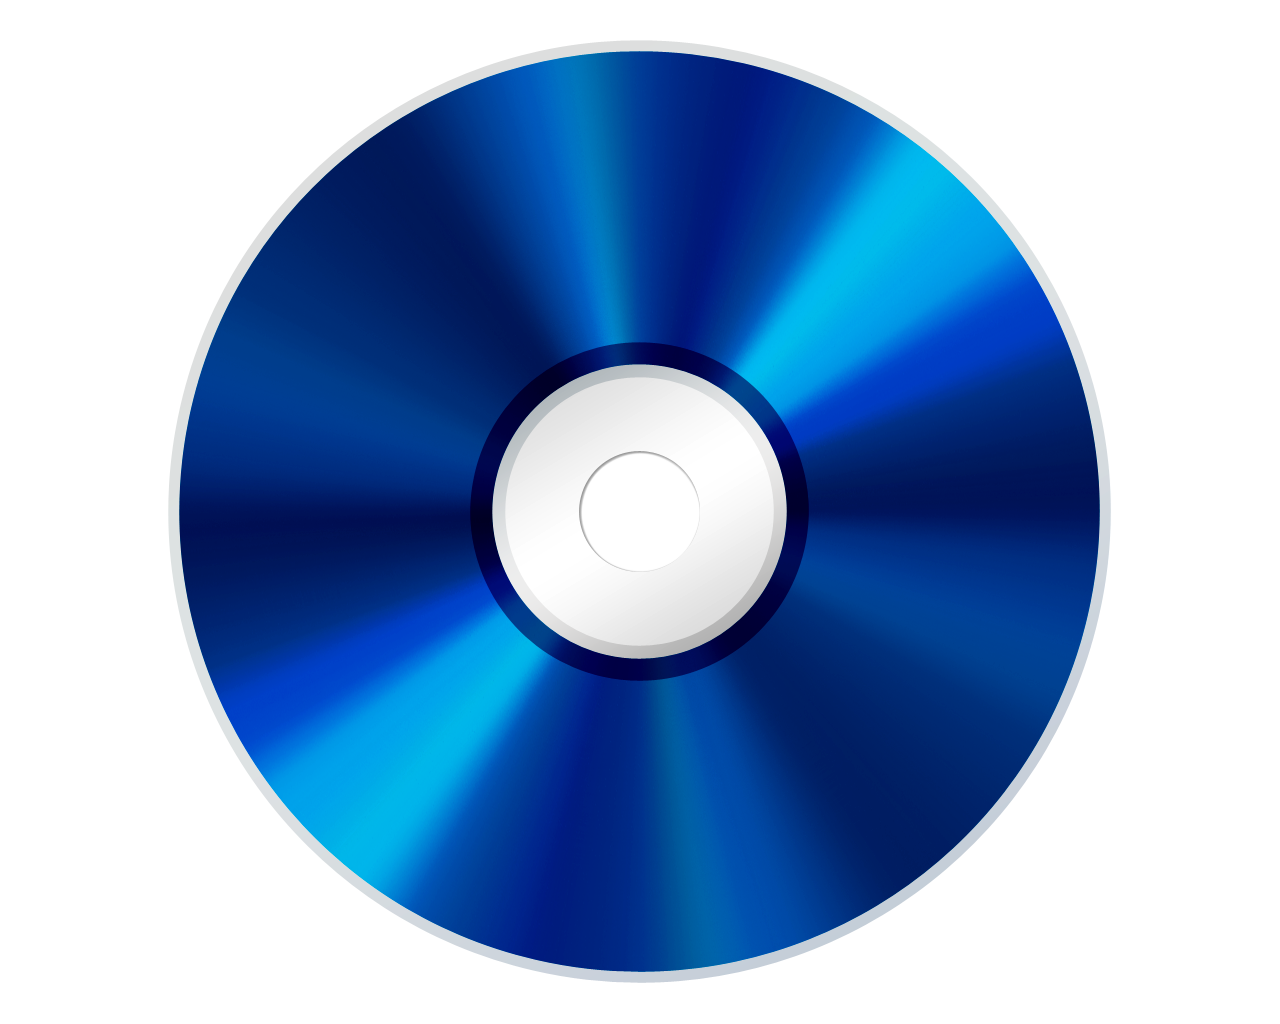 CD/DVD, optische Disk